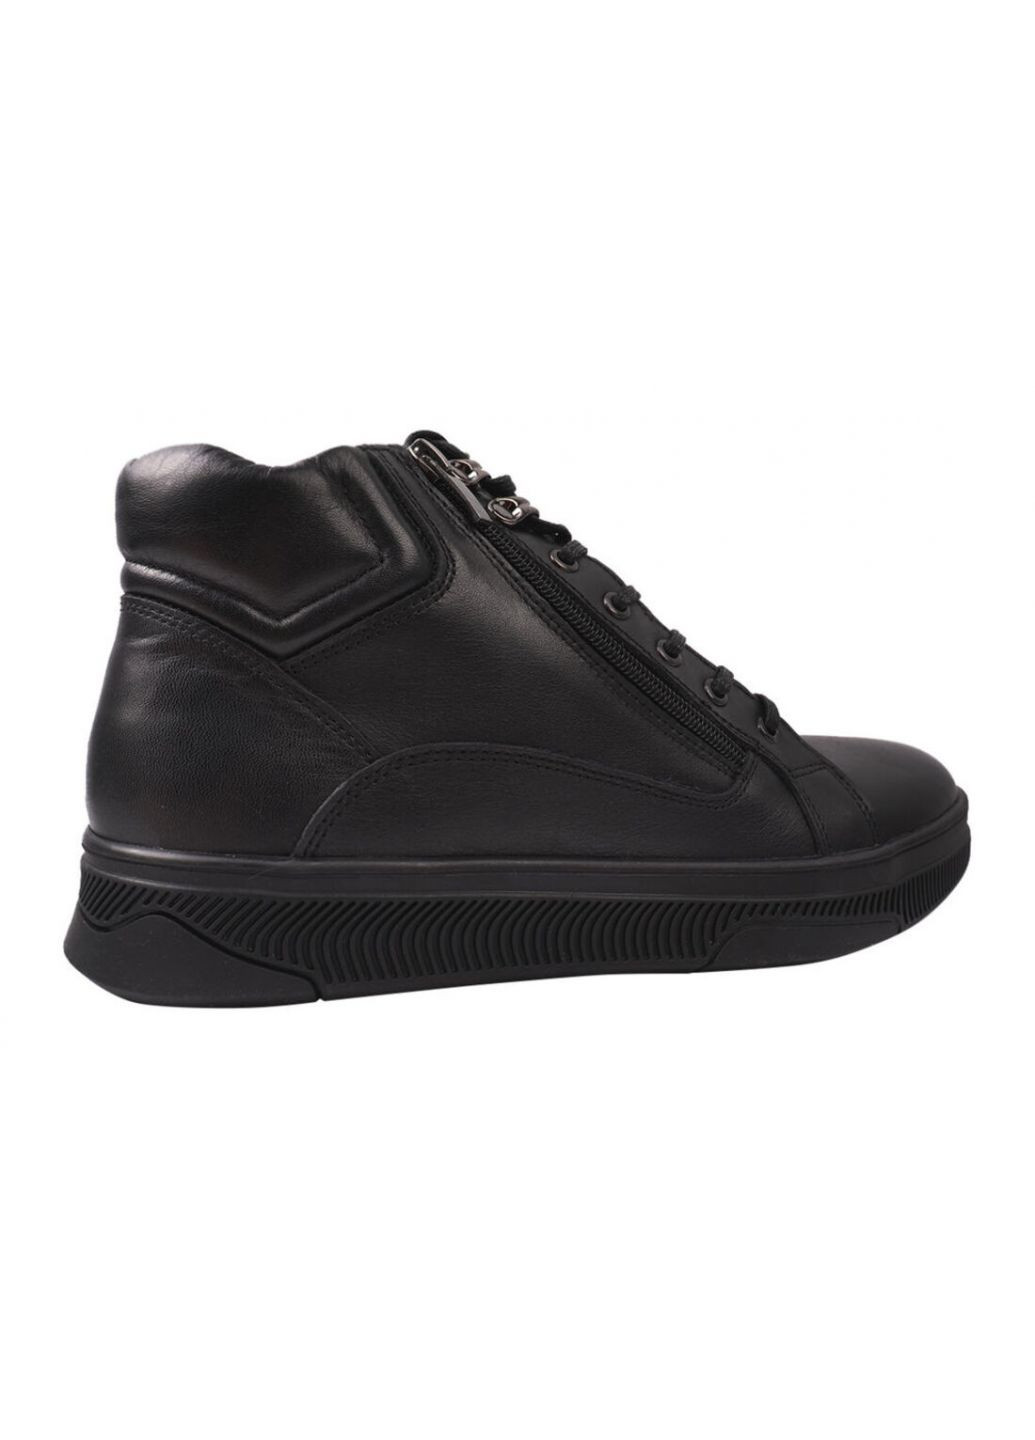 Черные ботинки мужские из натуральной кожи,на низком ходу,на шнуровку,черные,украина Marion